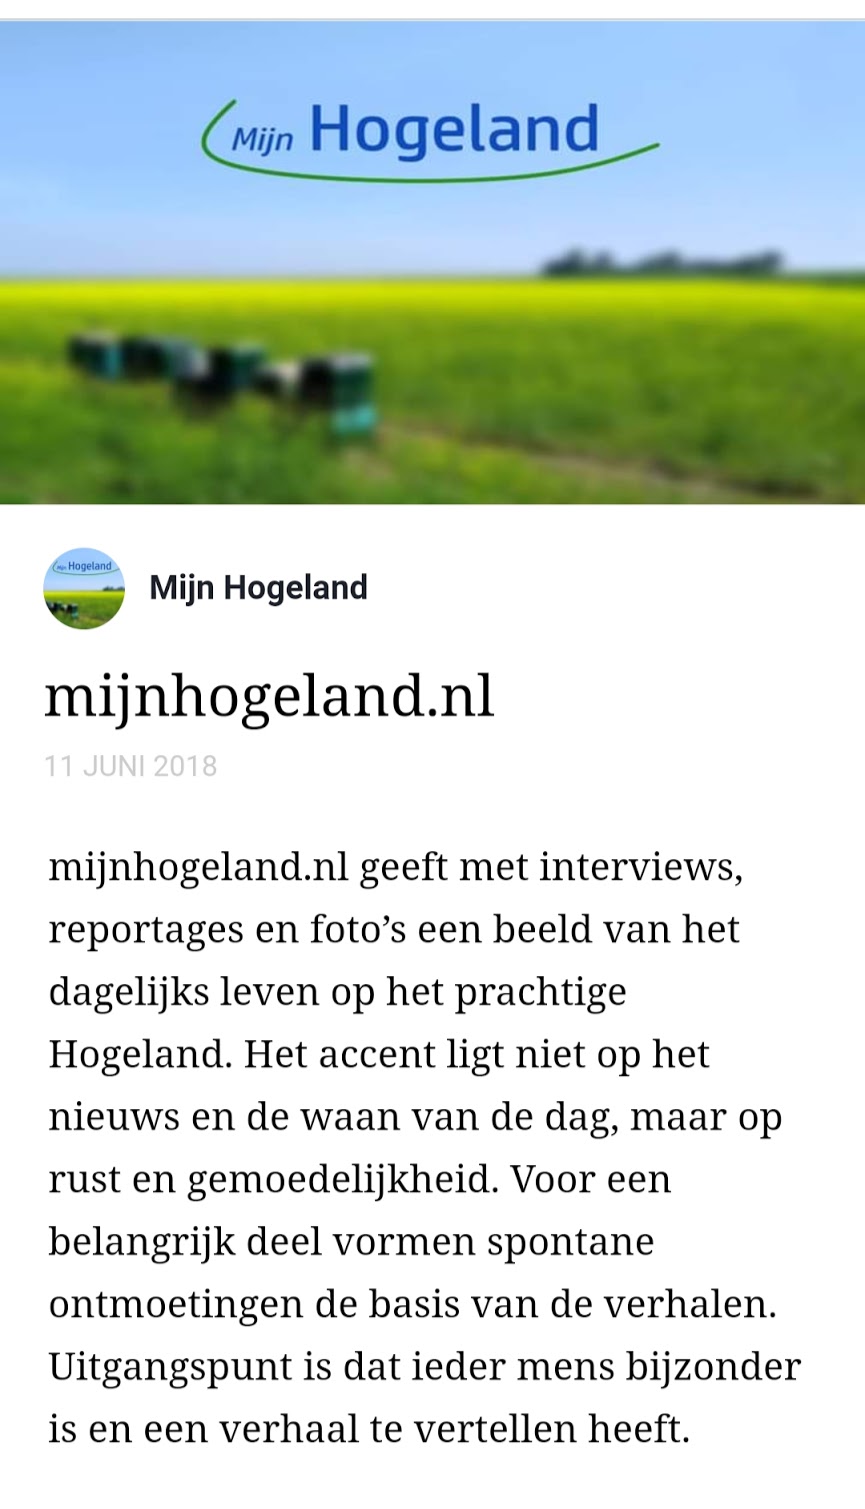 Verhaal op mijnhogeland.nl